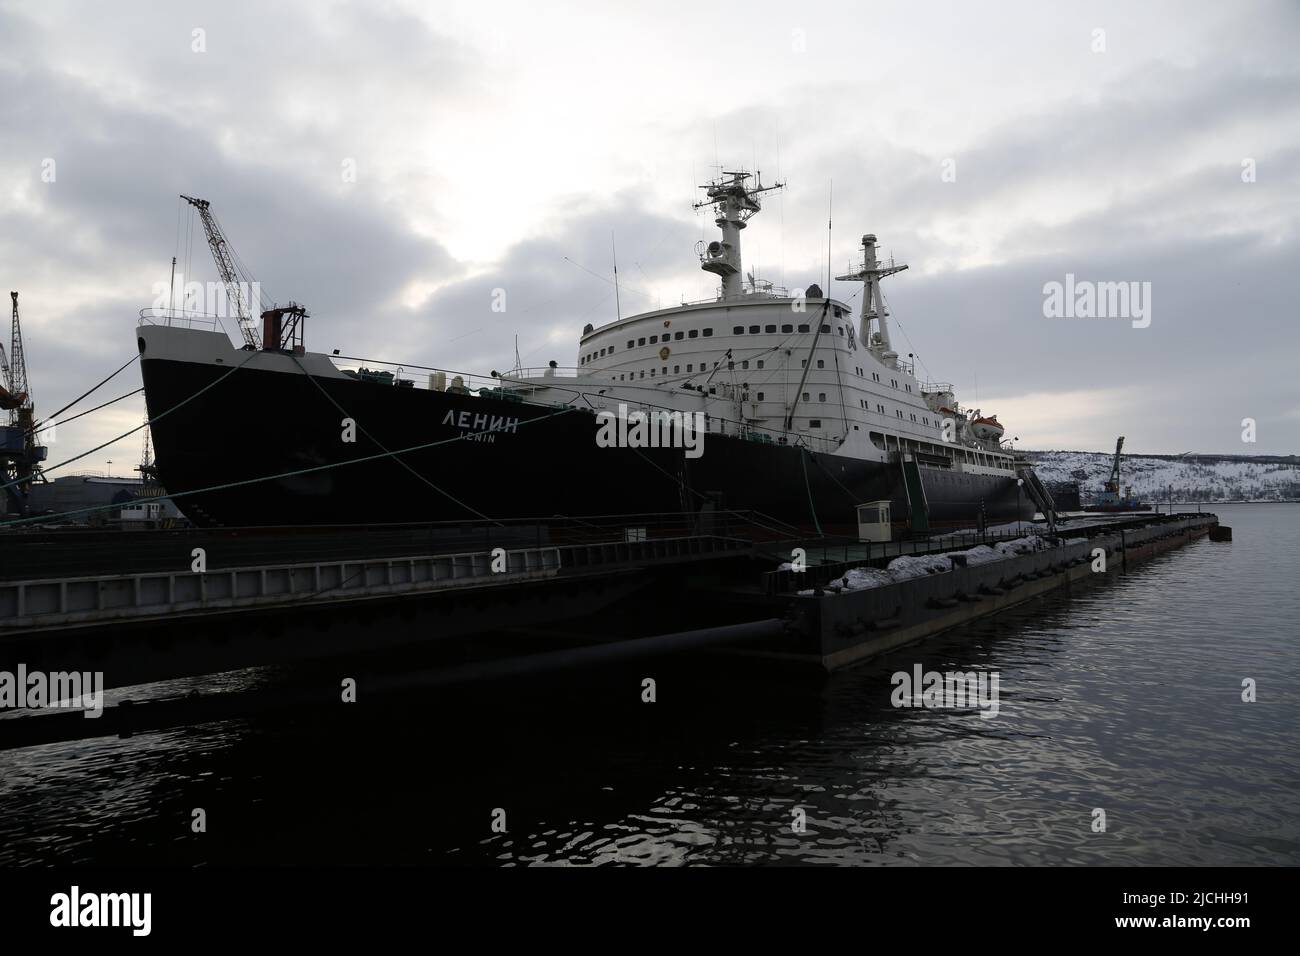 Soviet nuclear-powered icebreaker 'Lenin' ('Ленин') in Murmansk, Russia Stock Photo